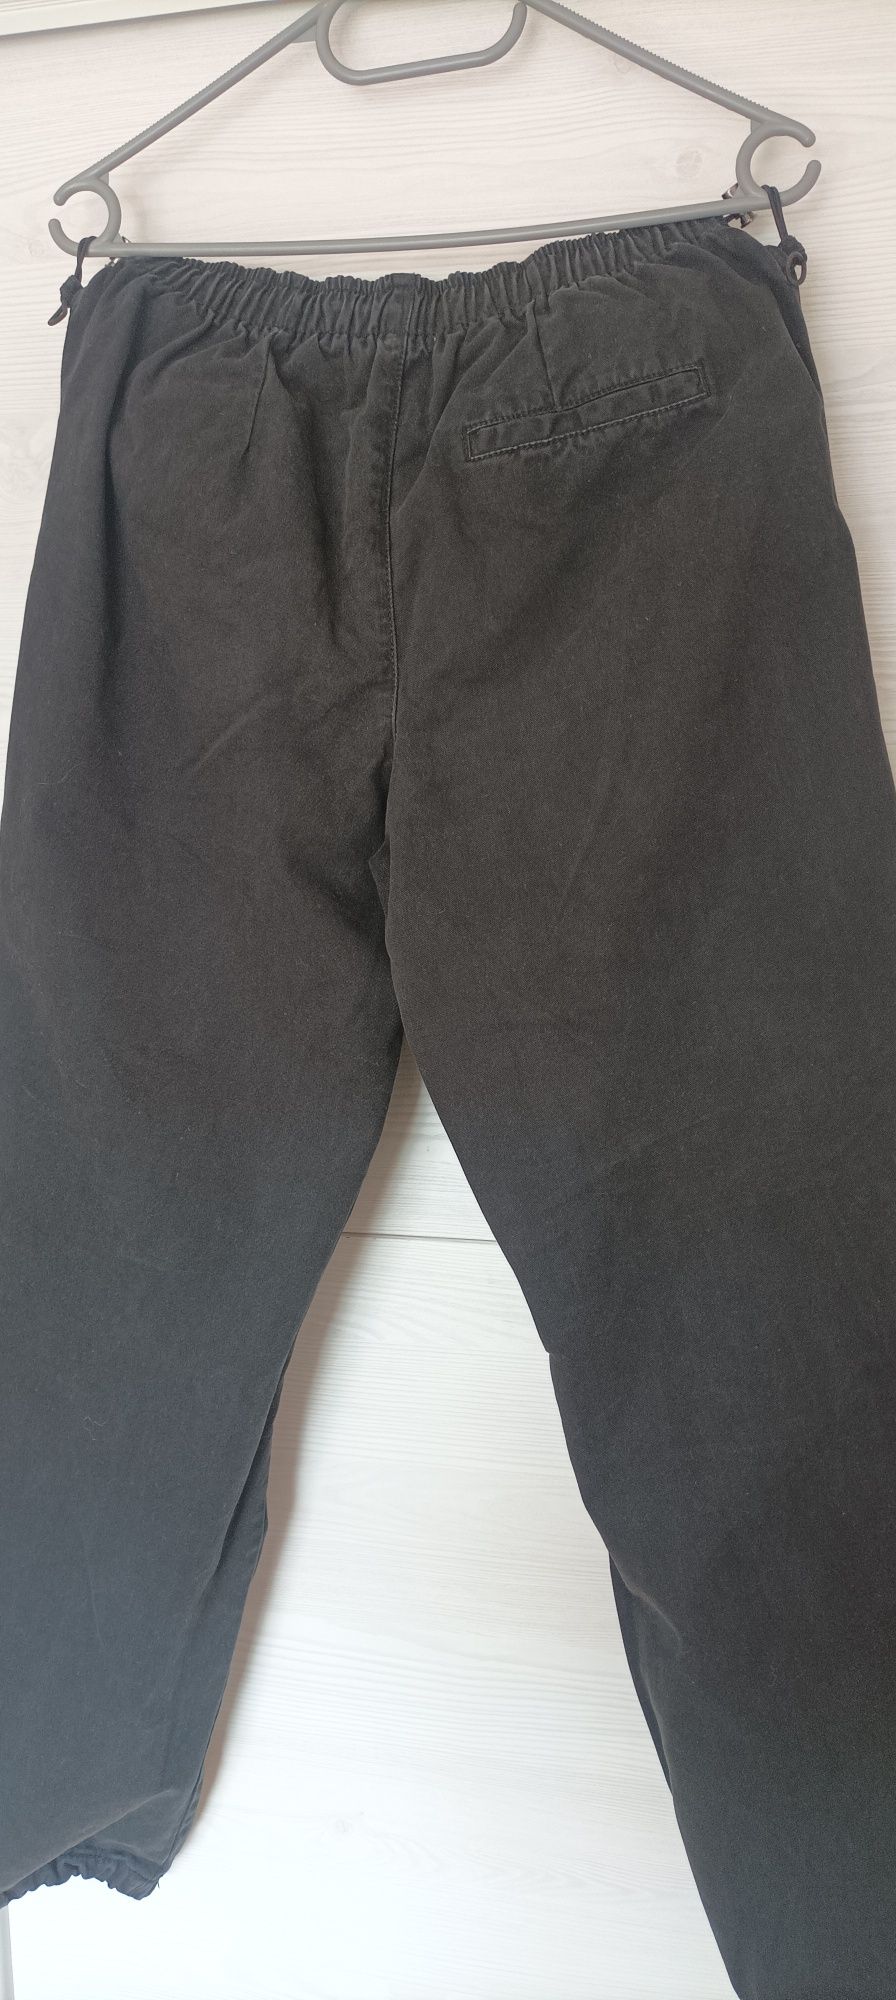 Czarne spodnie Bershka XS parachute pants